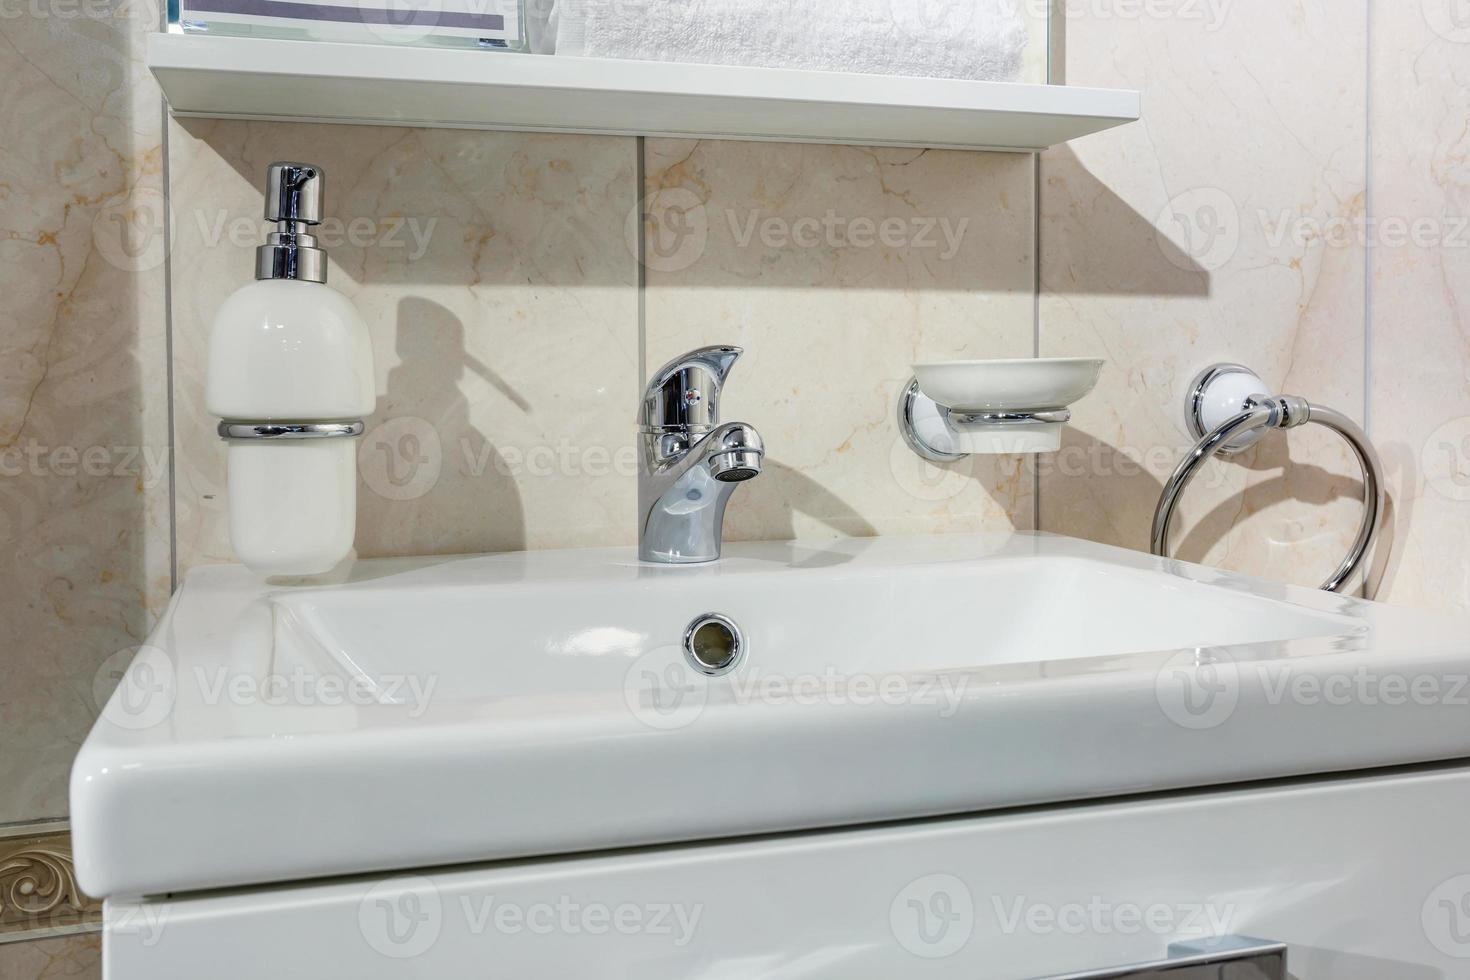 lavabo en céramique avec robinet avec distributeurs de savon et de shampoing dans une salle de bain ou une cuisine loft coûteuse photo